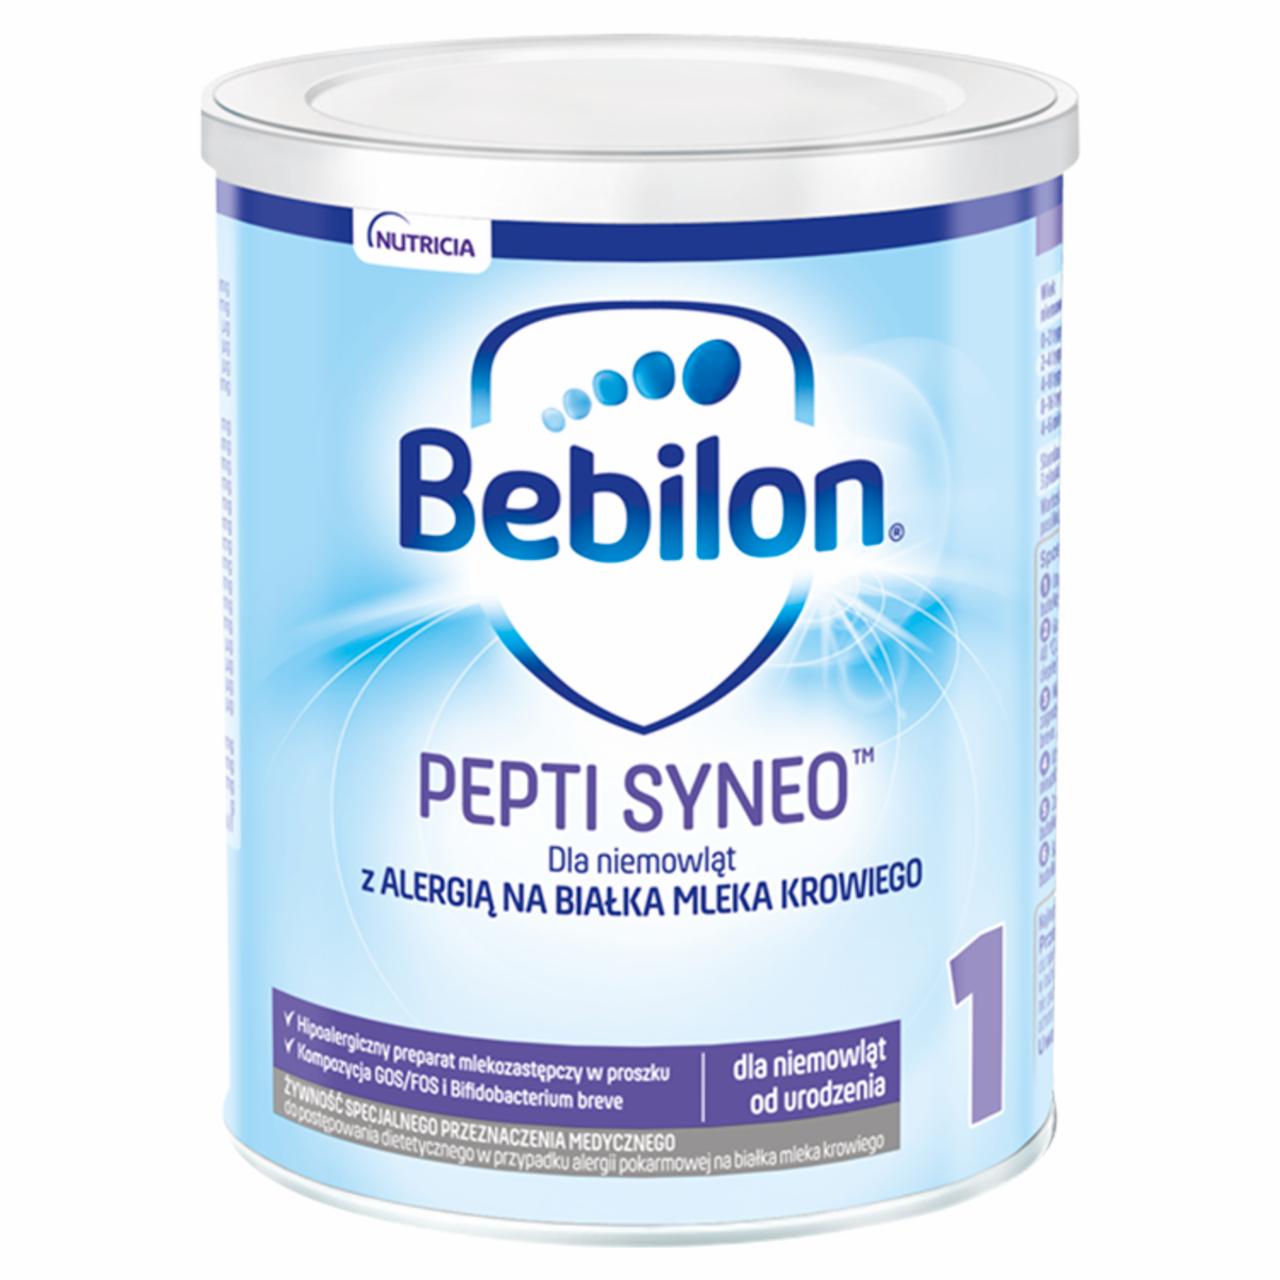 Zdjęcia - Bebilon pepti 1 Syneo Żywność specjalnego przeznaczenia medycznego 400 g